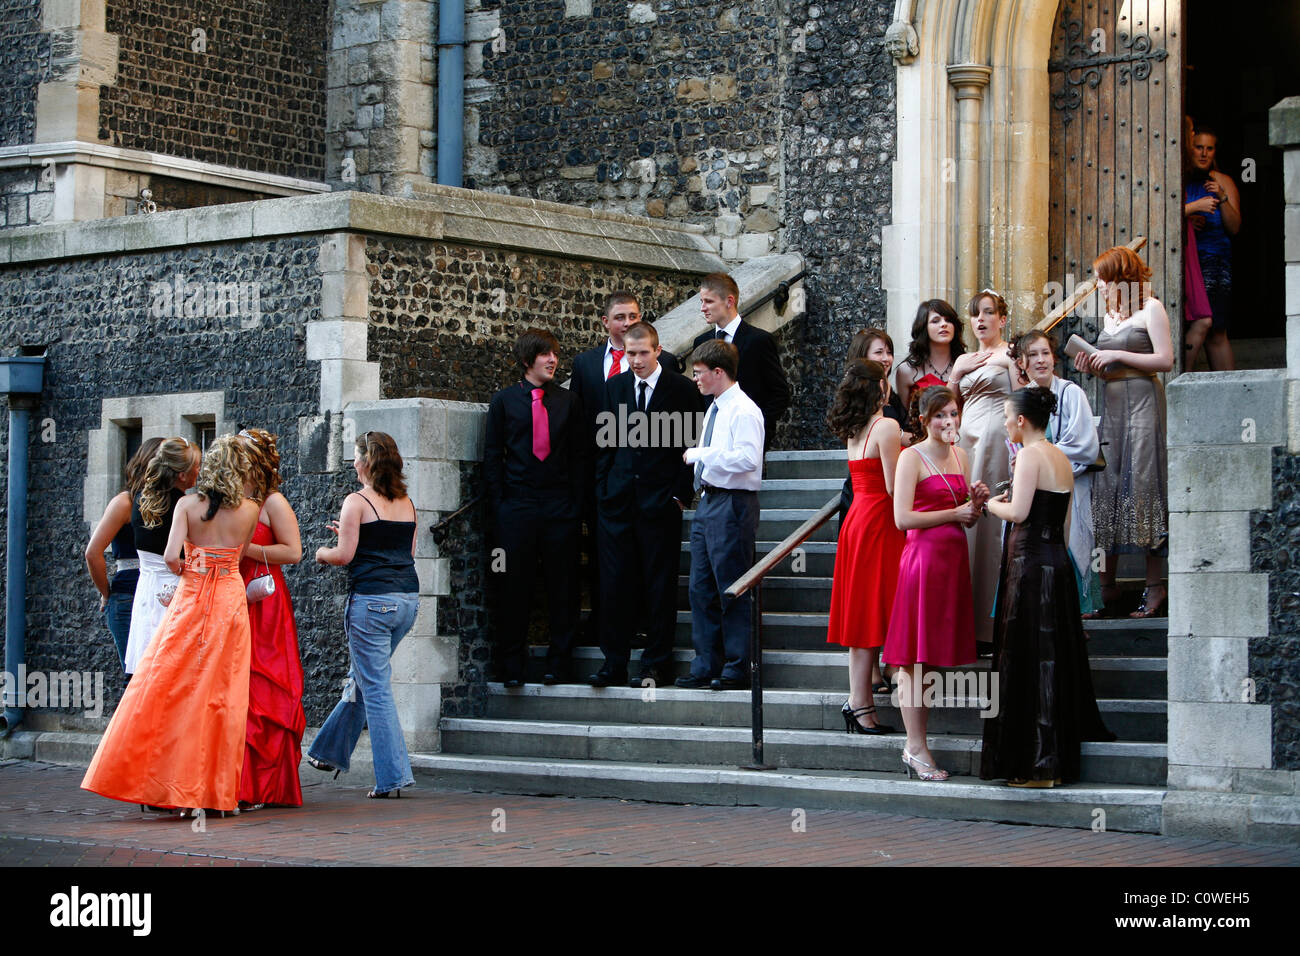 Les jeunes adolescents habillés pour un parti prom, Canterbury, Kent, England, UK. Banque D'Images